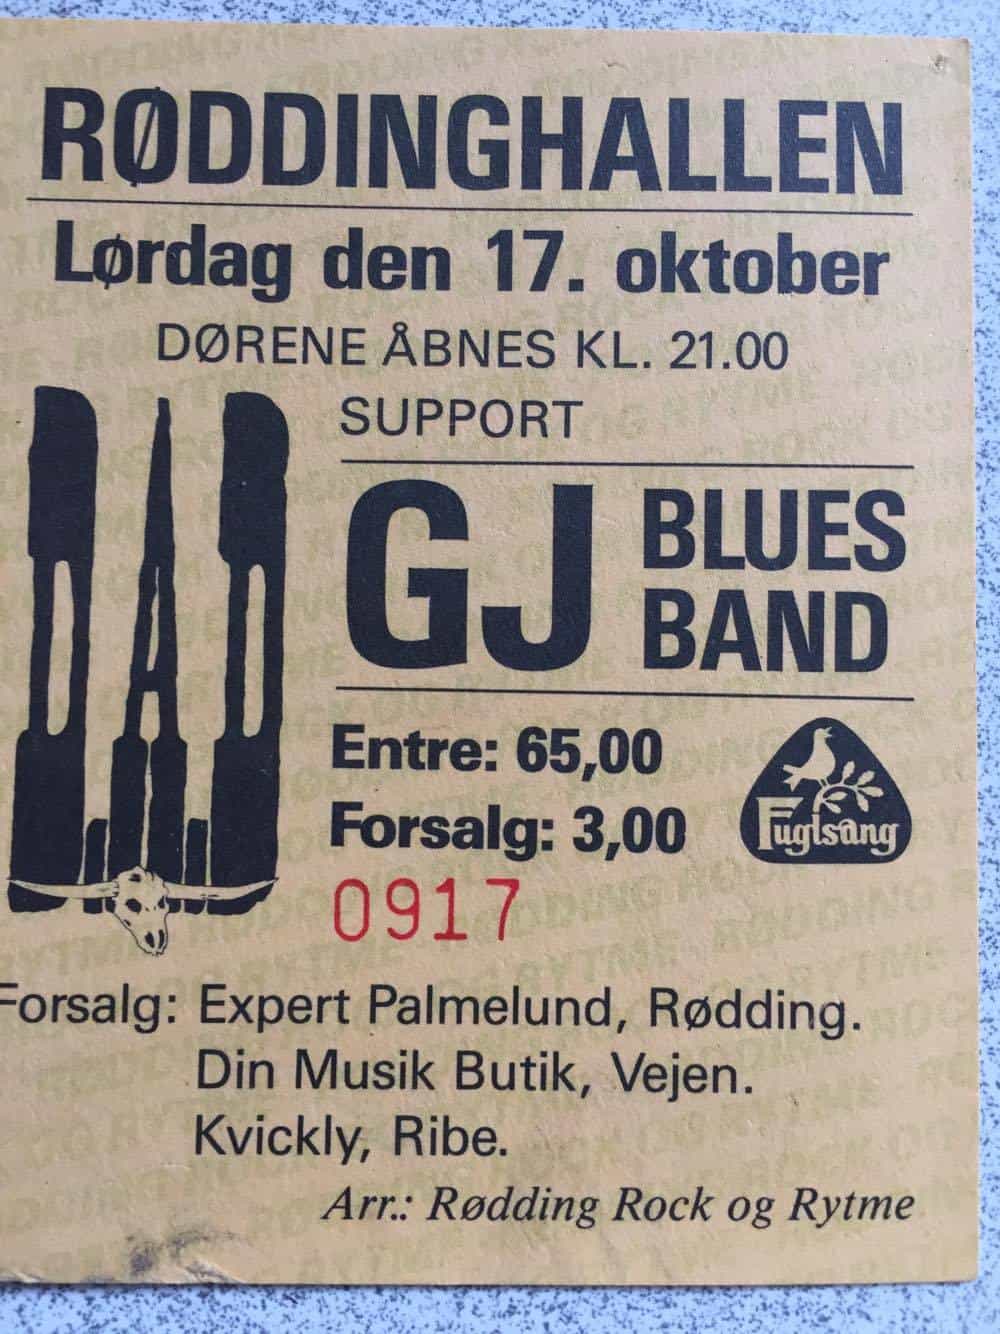 TICKET FOR RØDDINGHALLEN, RØDDING (DK), OCTOBER 17, 1987